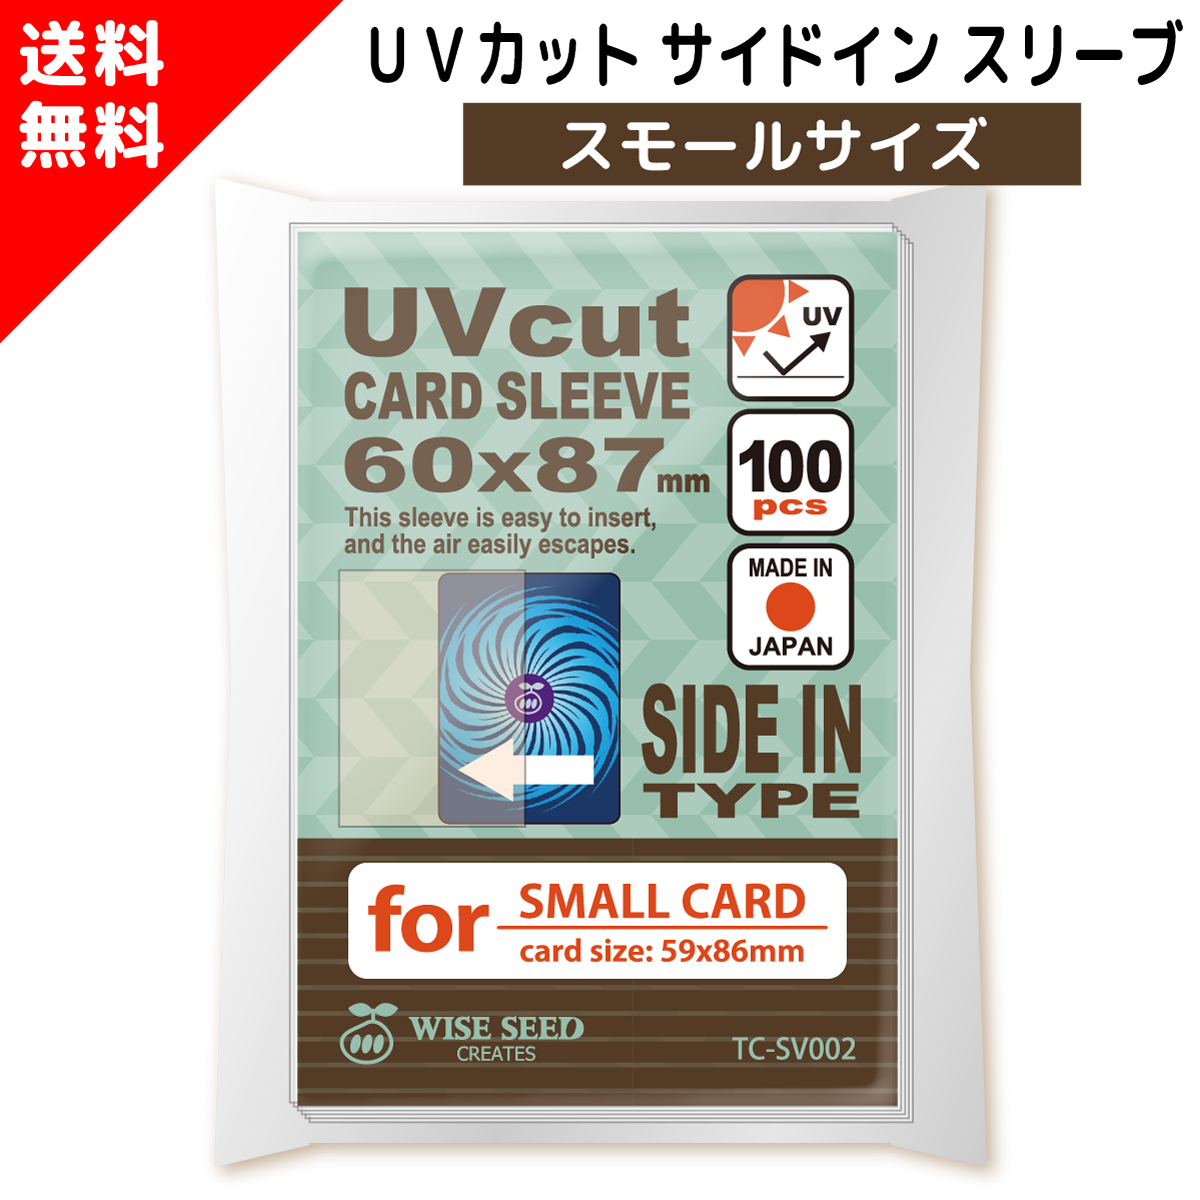 UVカット カードスリーブ サイドイン スタンダードサイズ 64 